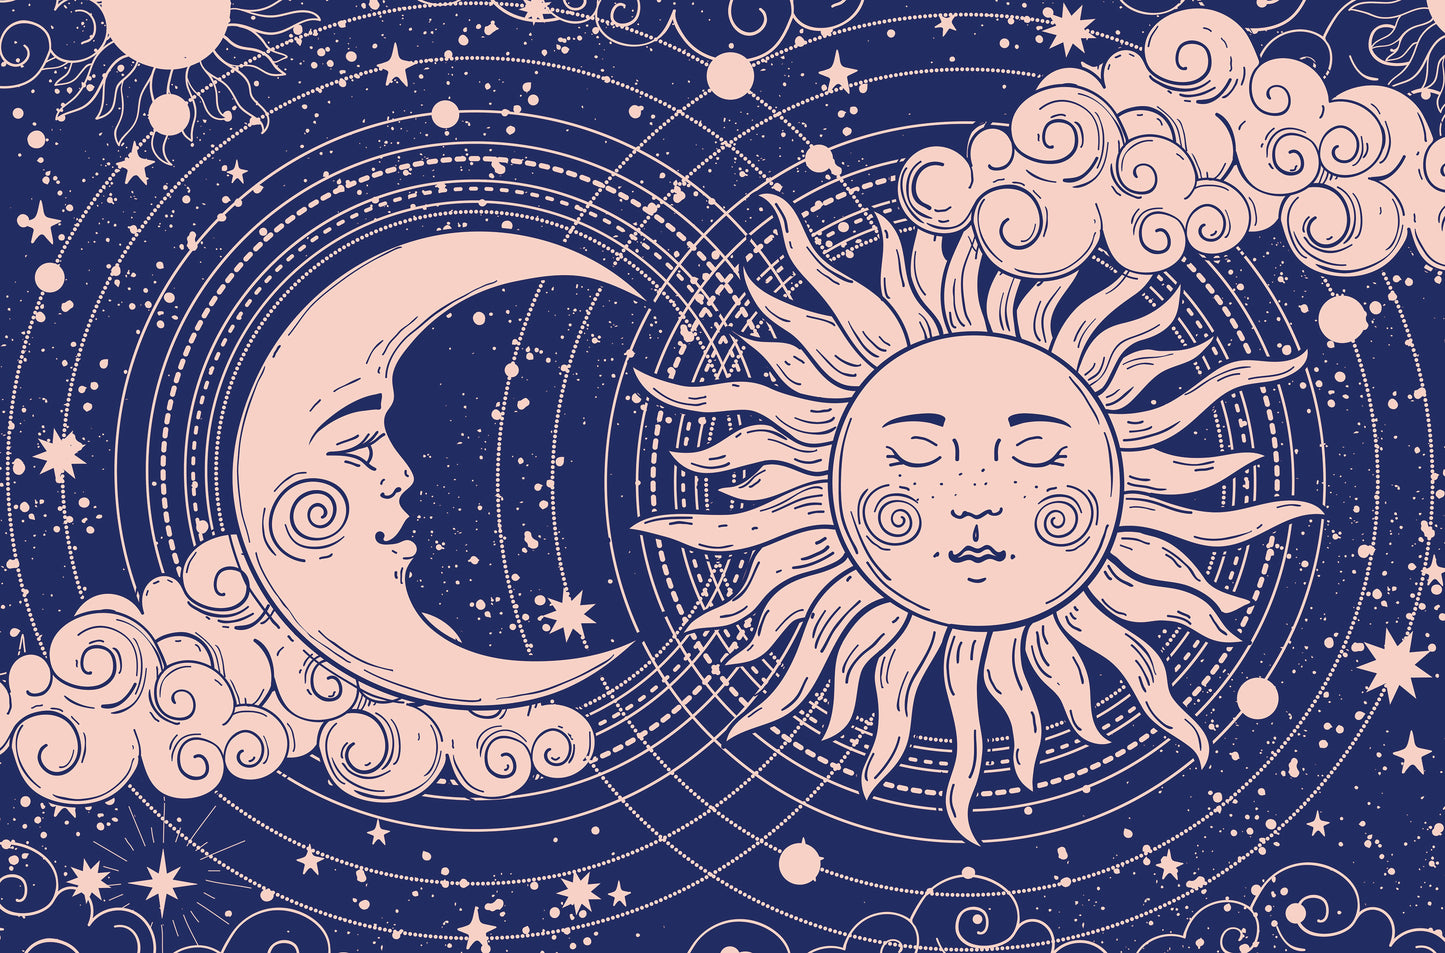 "Sun, Moon, and Stars" | JadedGemShop Diamond Painting Kit